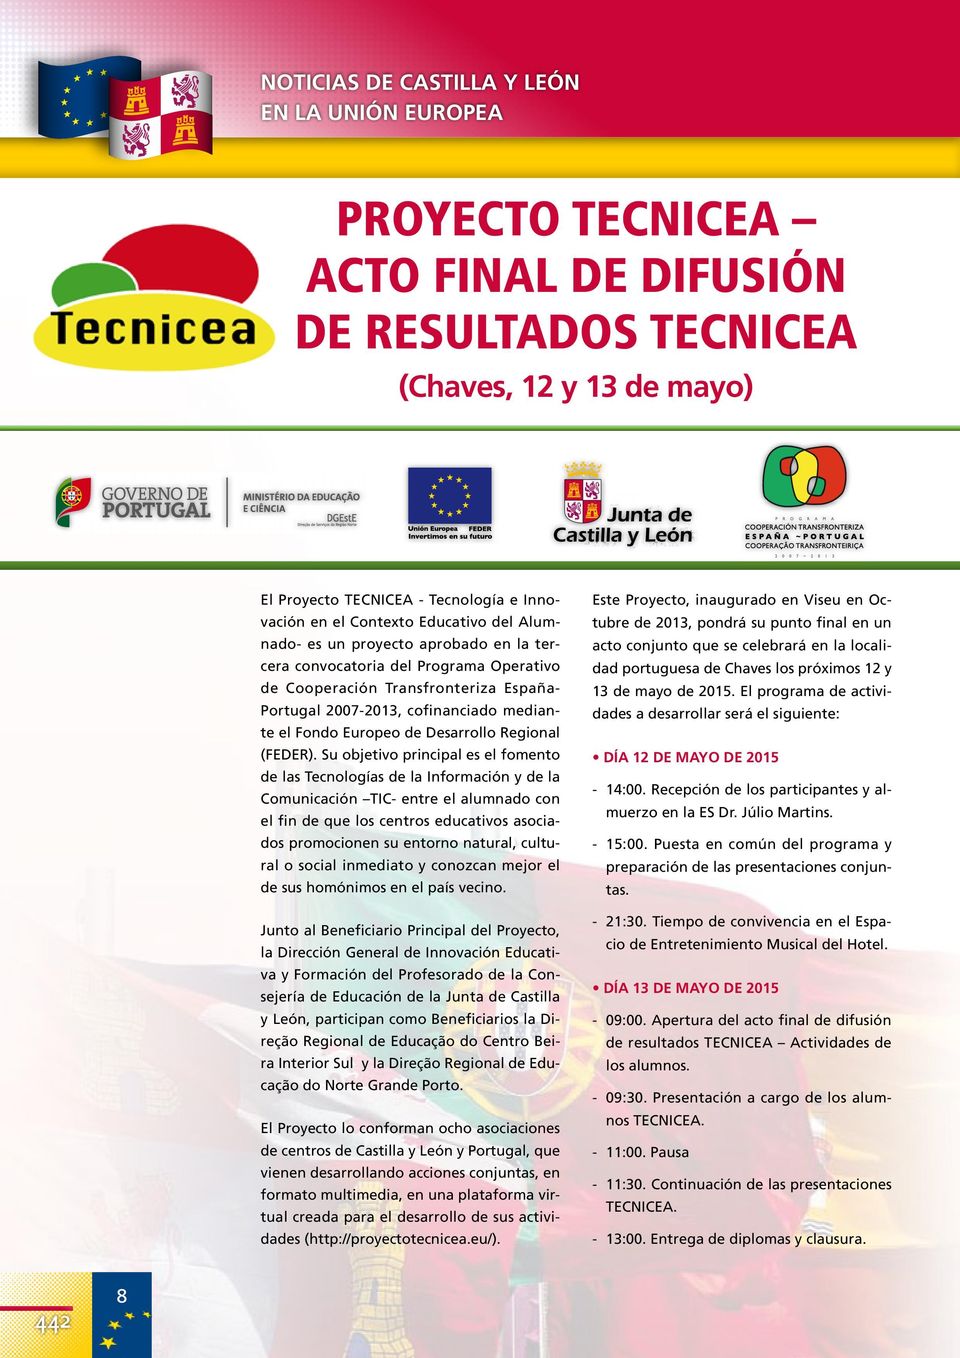 Programa Operativo dad portuguesa de Chaves los próximos 12 y de Cooperación Transfronteriza España- 13 de mayo de 2015.